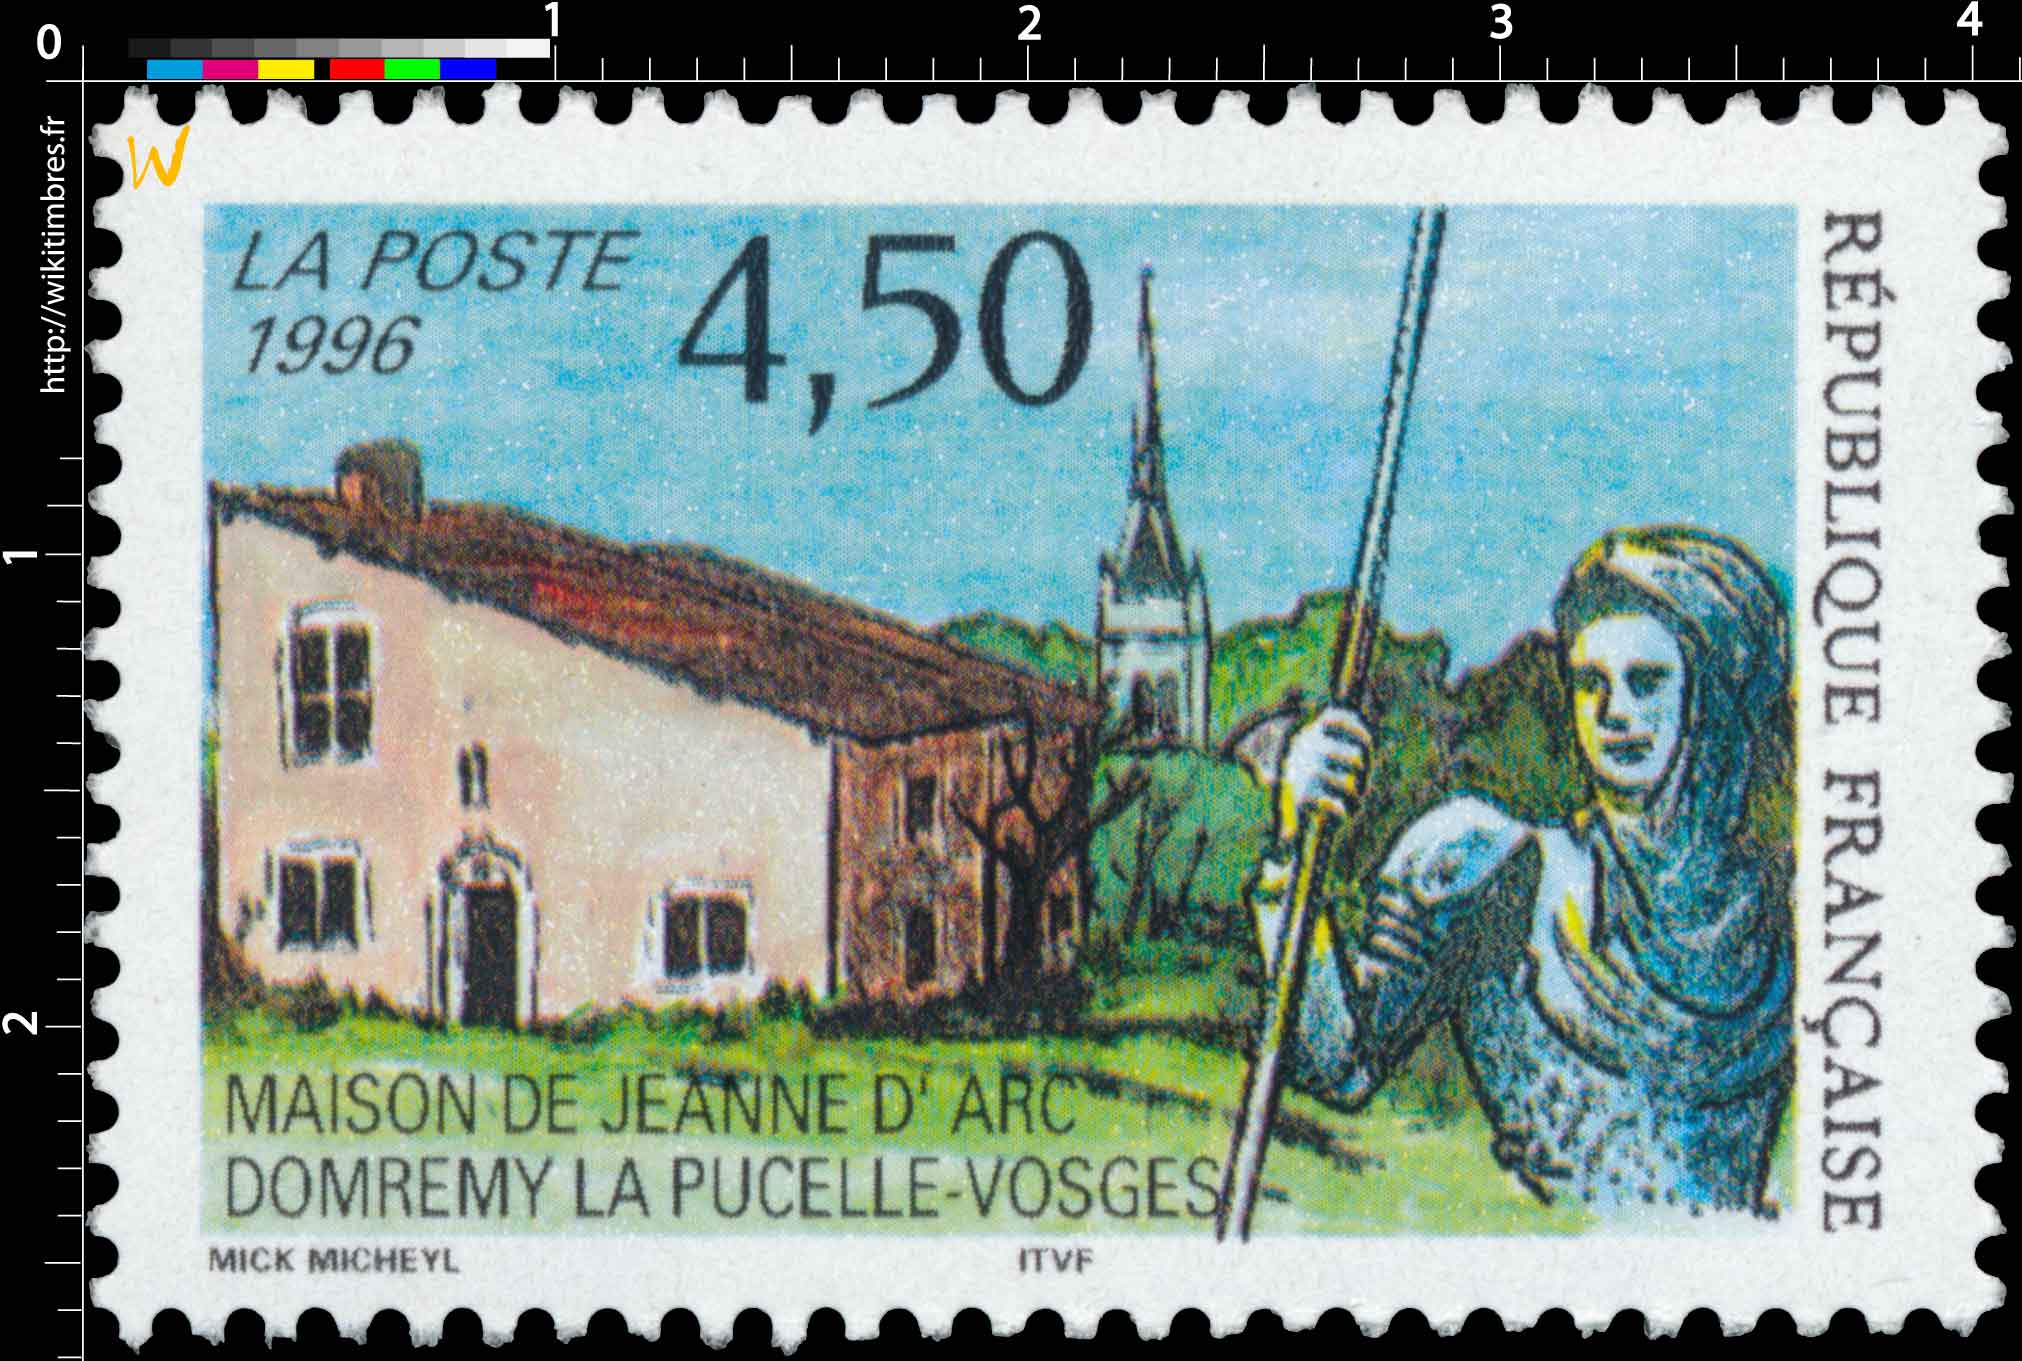 1996 MAISON DE JEANNE D'ARC DOMRÉMY LA PUCELLE - VOSGES